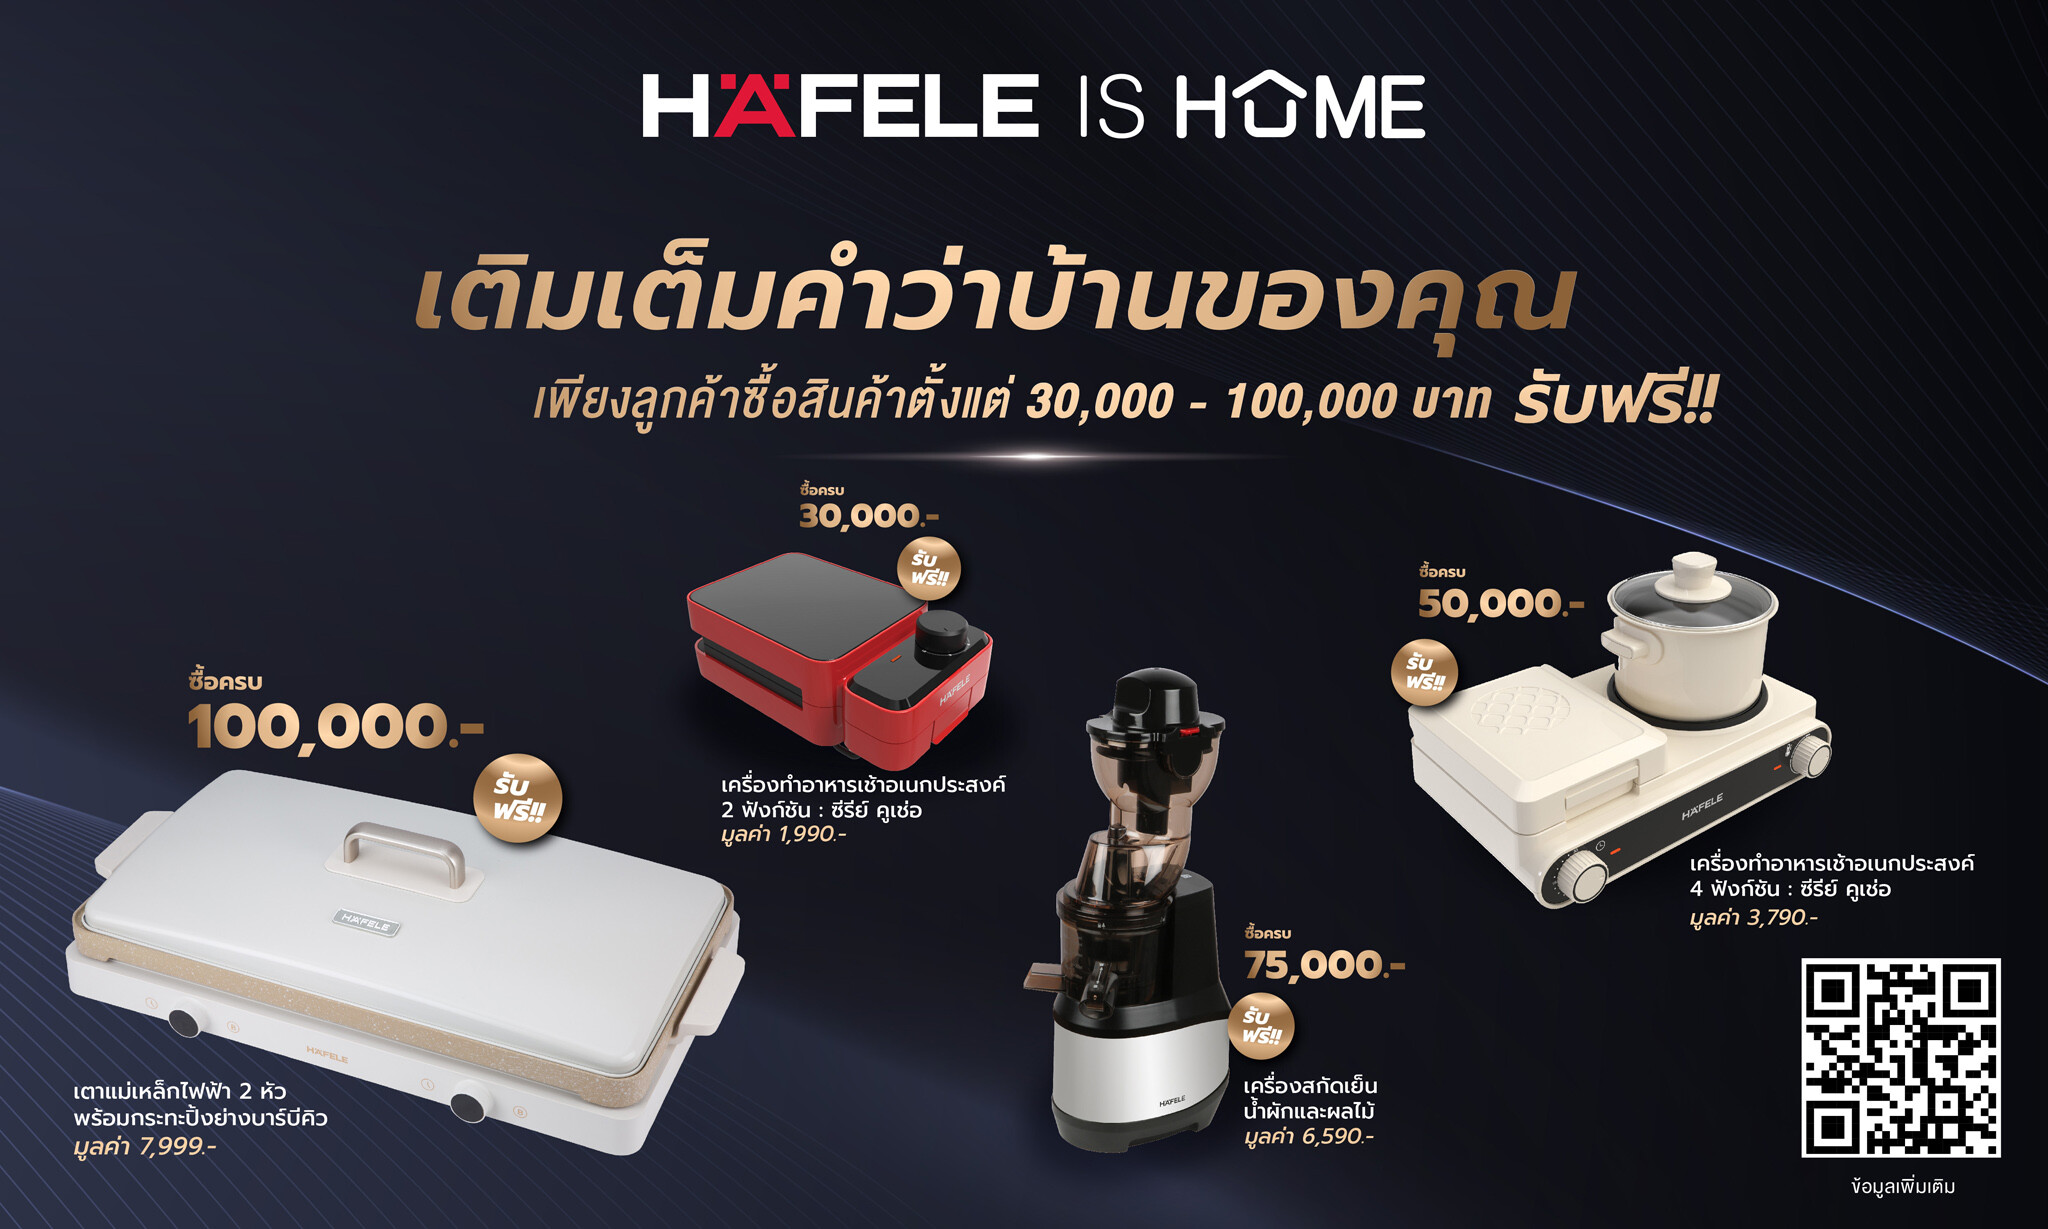 ช้อปกับ "HAFELE IS HOME" รับฟรี!! อุปกรณ์คุณภาพจากเฮเฟเล่ เติมเต็มคำว่าบ้านของคุณ ถึง 31 ธ.ค. 65 นี้